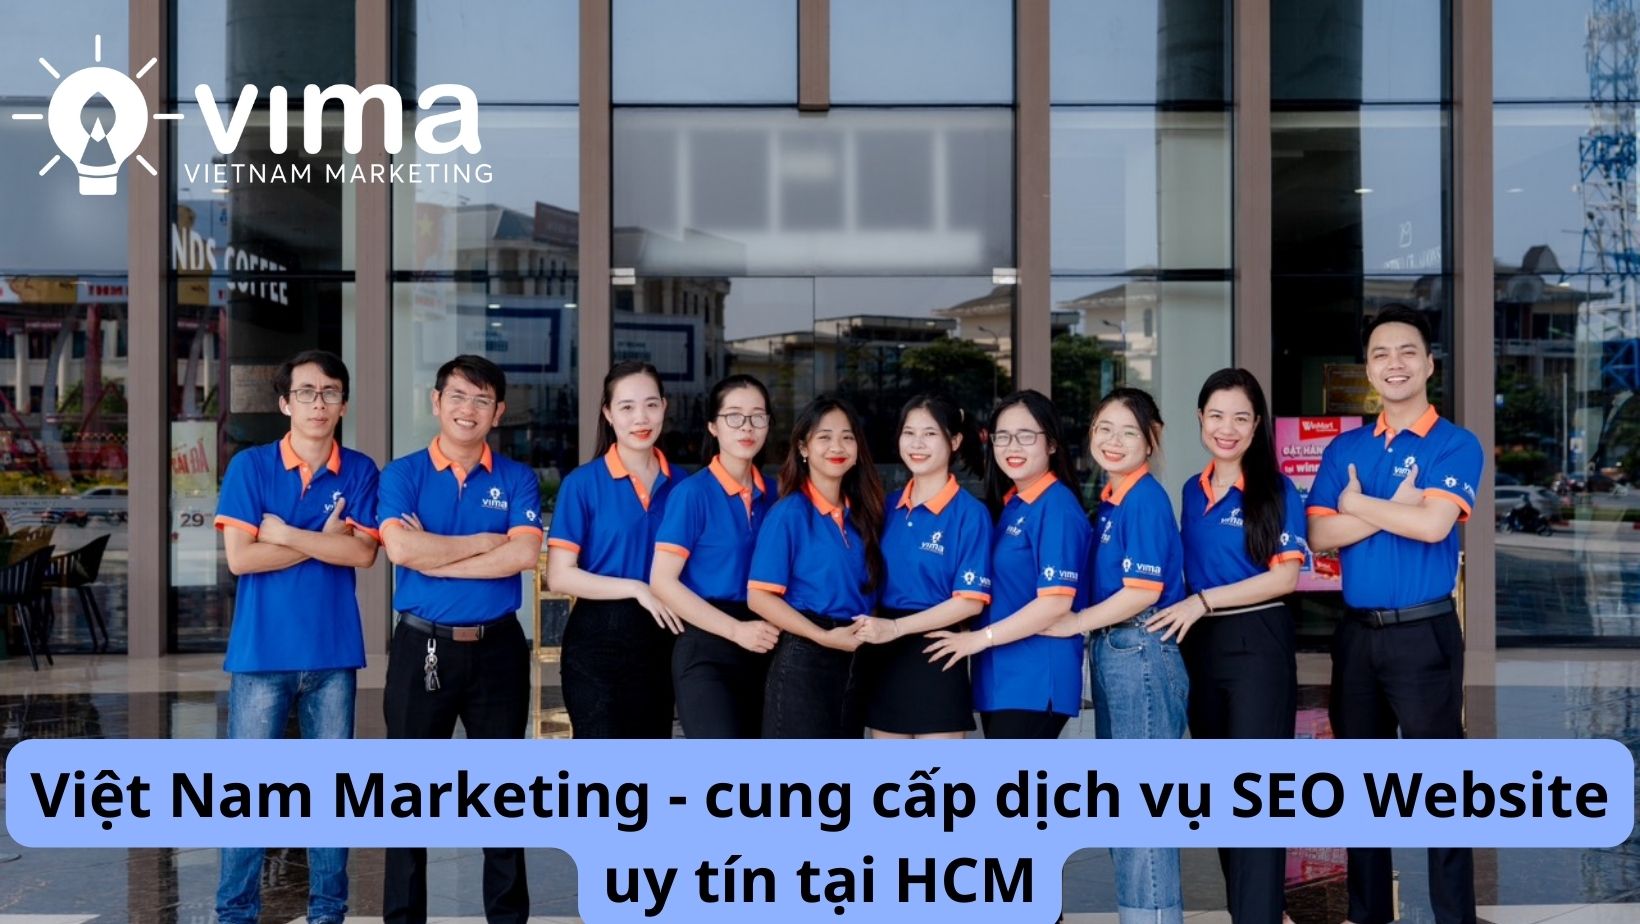 Tại sao nên lựa chọn dịch vụ SEO Website tại HCM của Việt Nam Marketing?